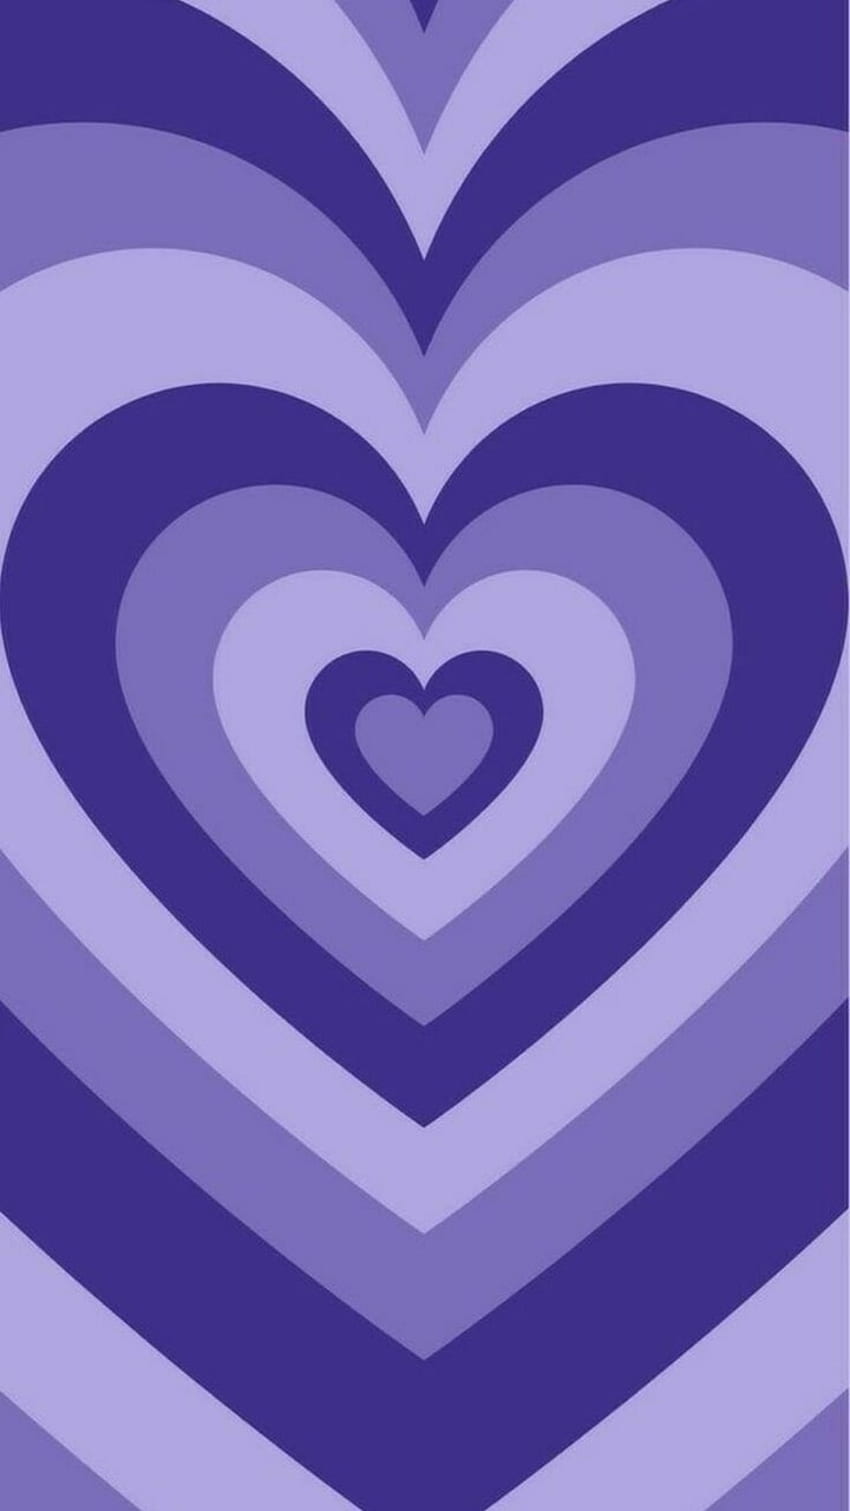 Aesthetic purple heart HD wallpaper